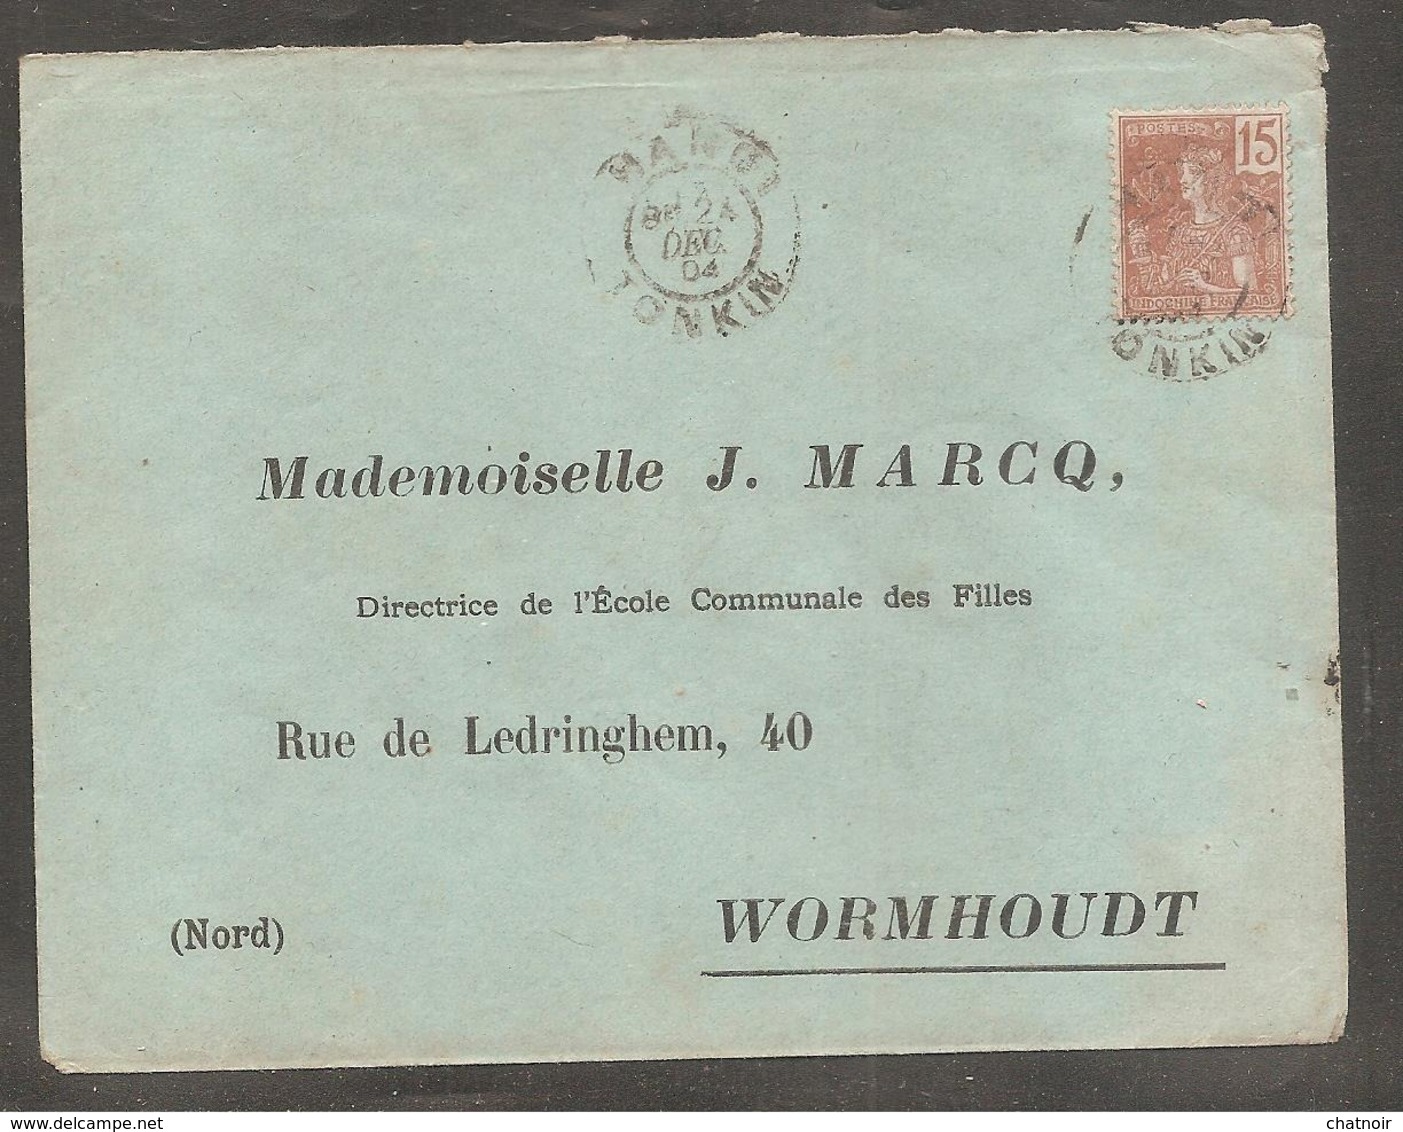 Enveloppe  Avec Timbre Indochine Francaise  Oblit  HANOI  TONKIN  1904  Pour  Wormhoudt   Nord - Andere-Azië